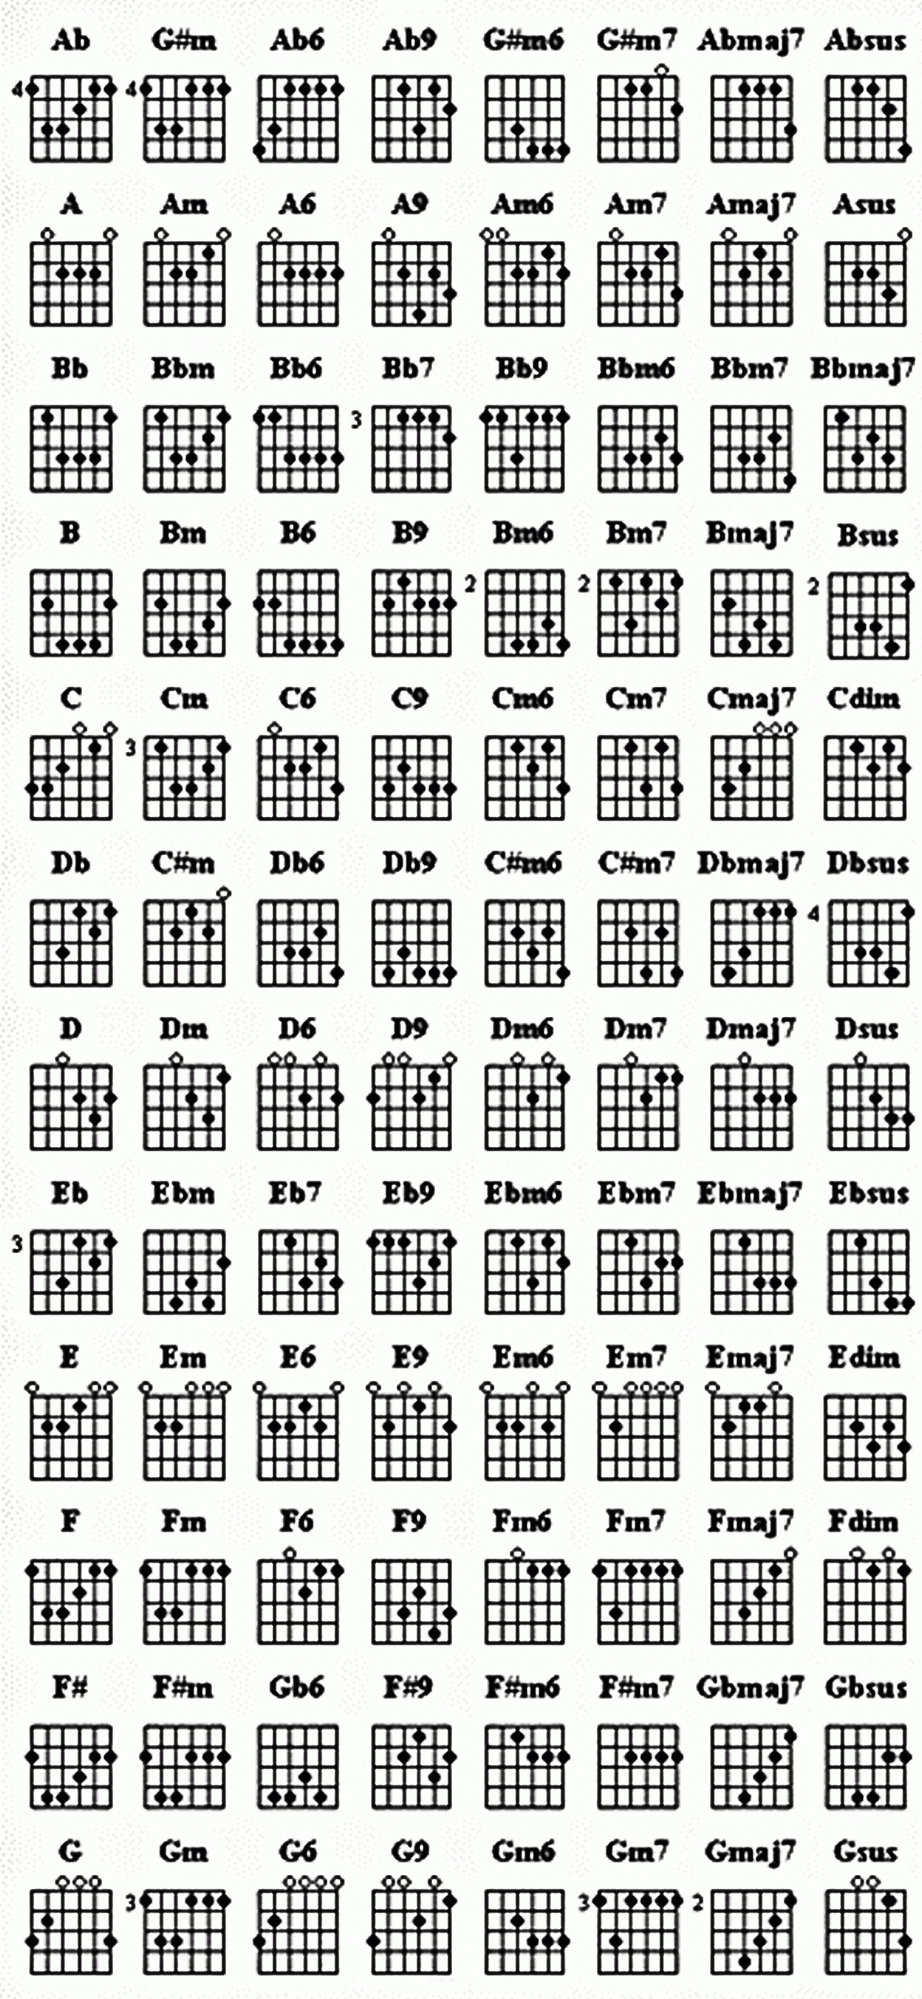 Bass Guitar Chords Chart | Guitar In 2019 | Pinterest | Bass Guitar - Free Printable Bass Guitar Chord Chart